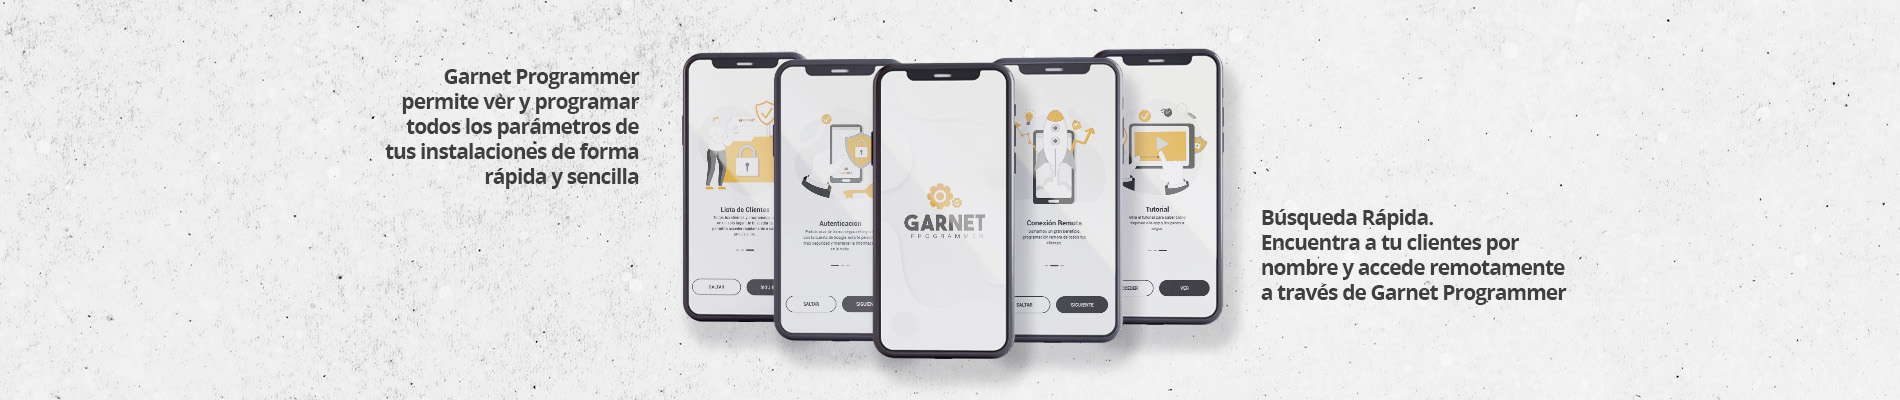 Nueva versión de la App Garnet Programmer de Garnet Technology